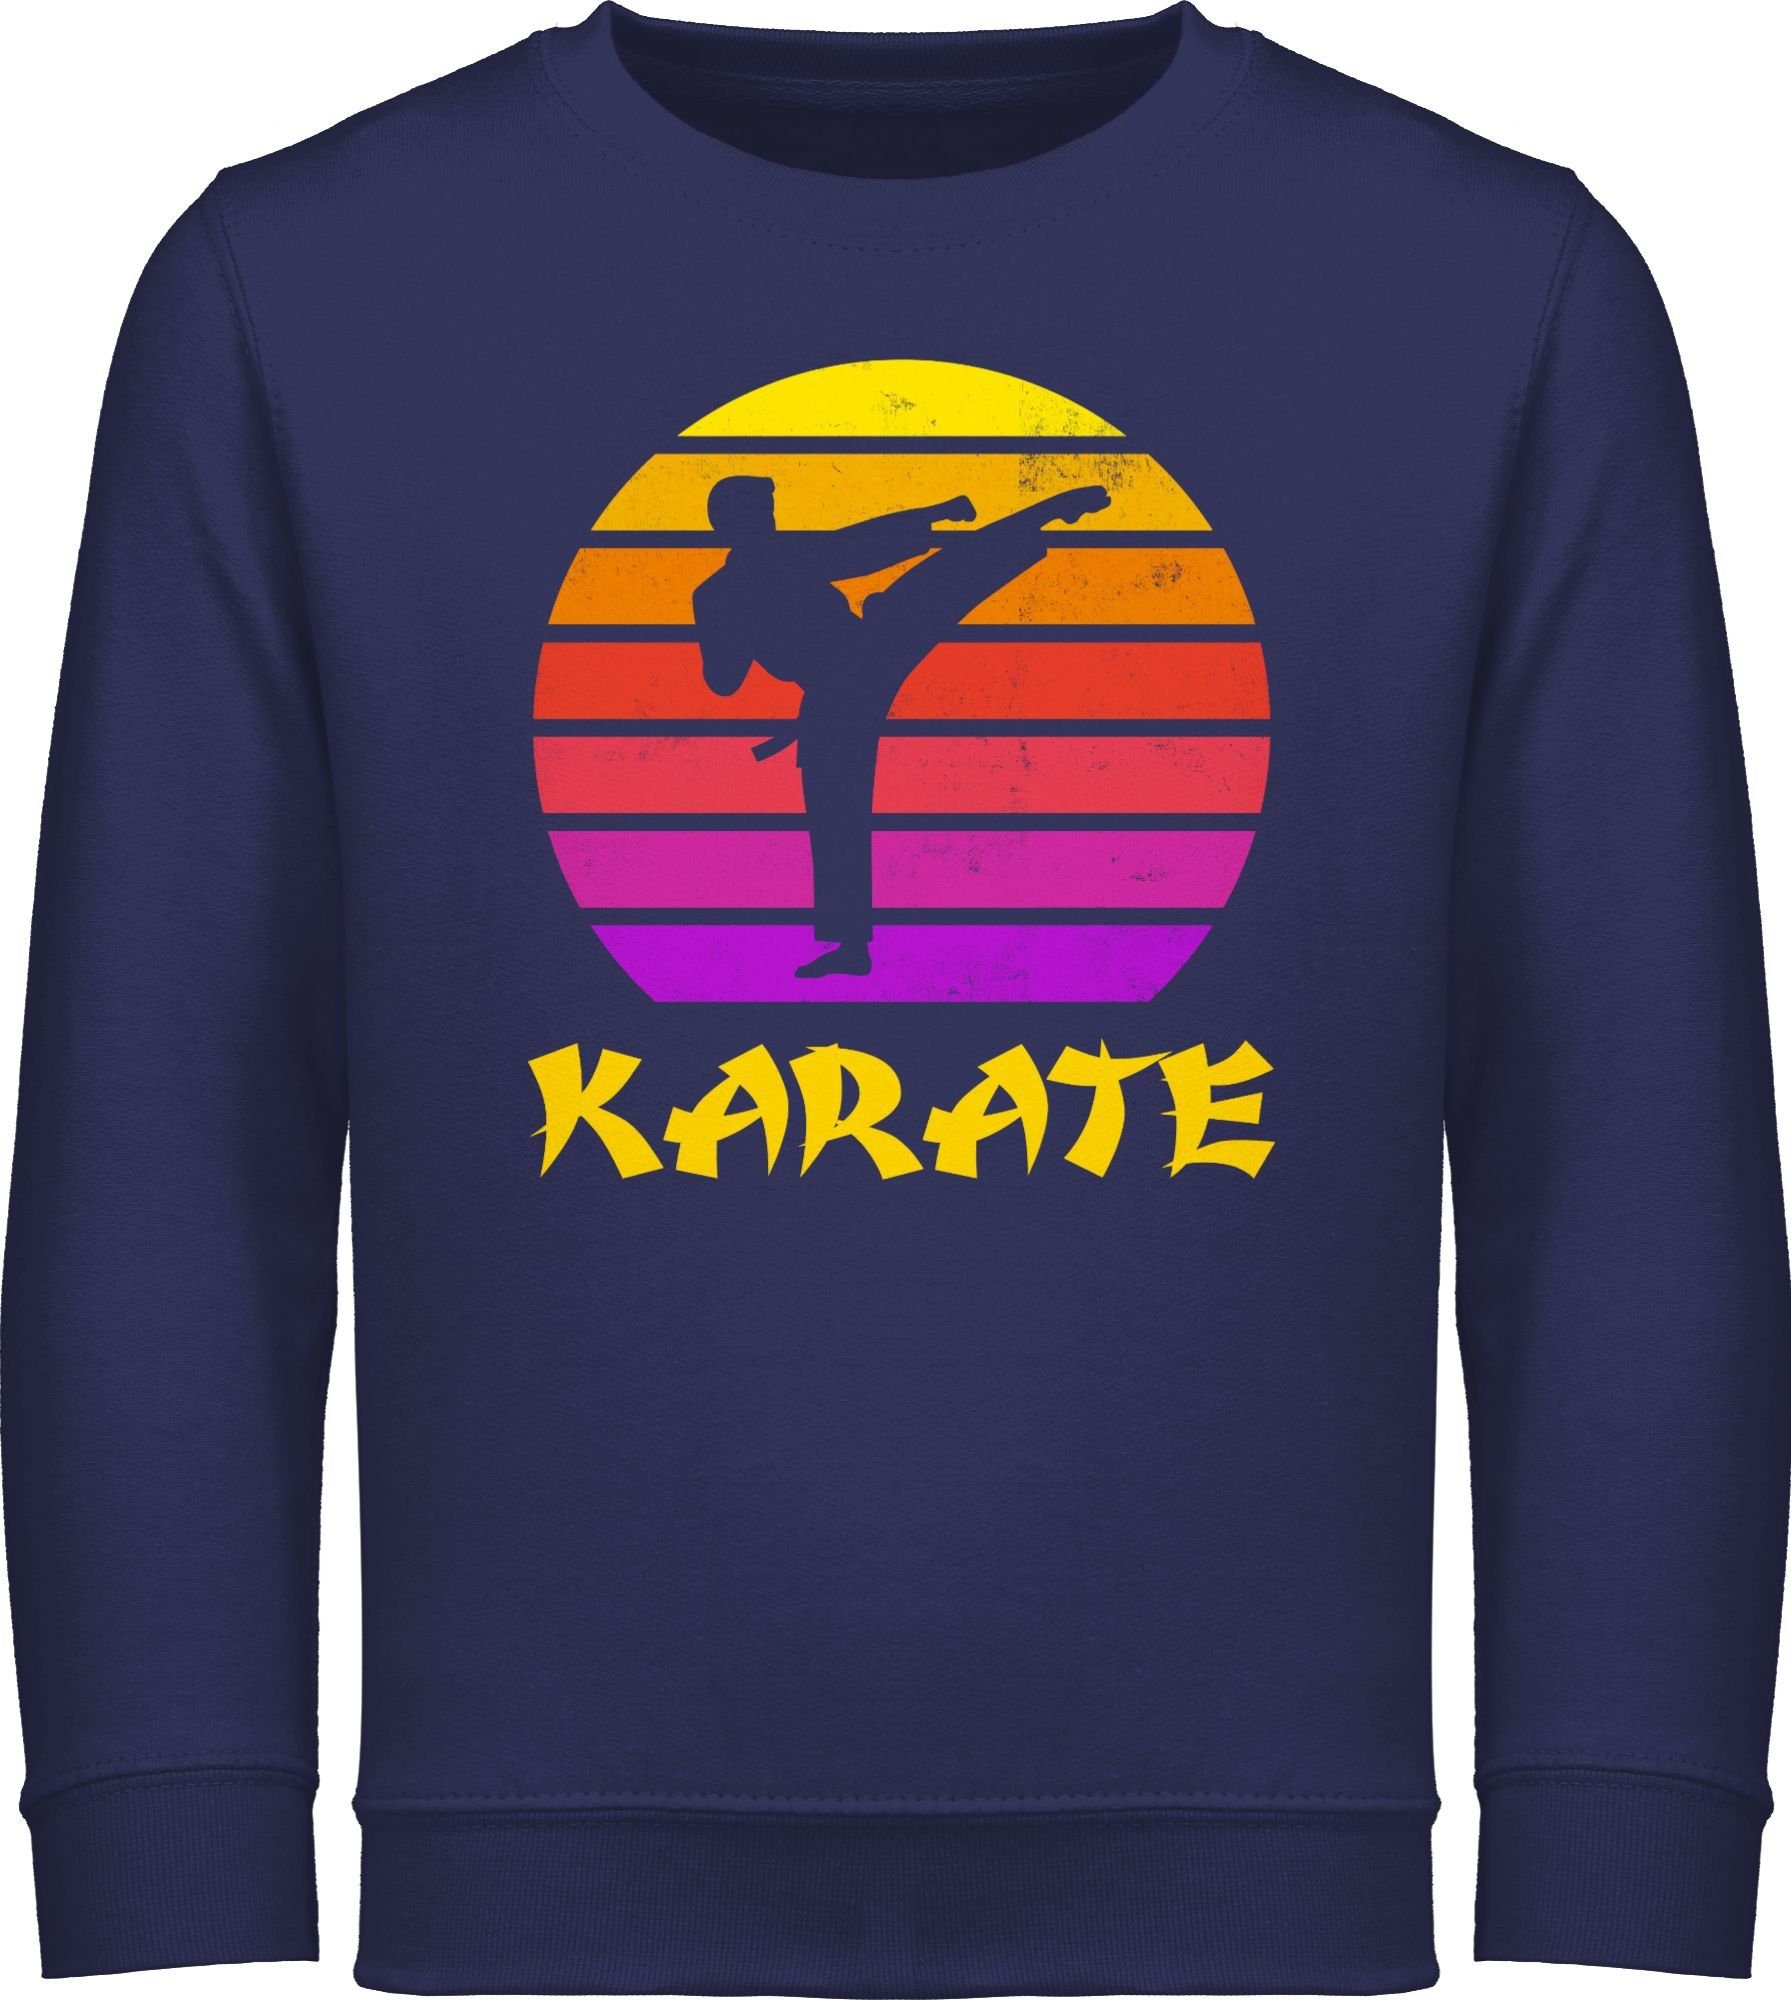 Shirtracer Sweatshirt Karate Retro Sonne 3 Blau Navy Kleidung Kinder Sport